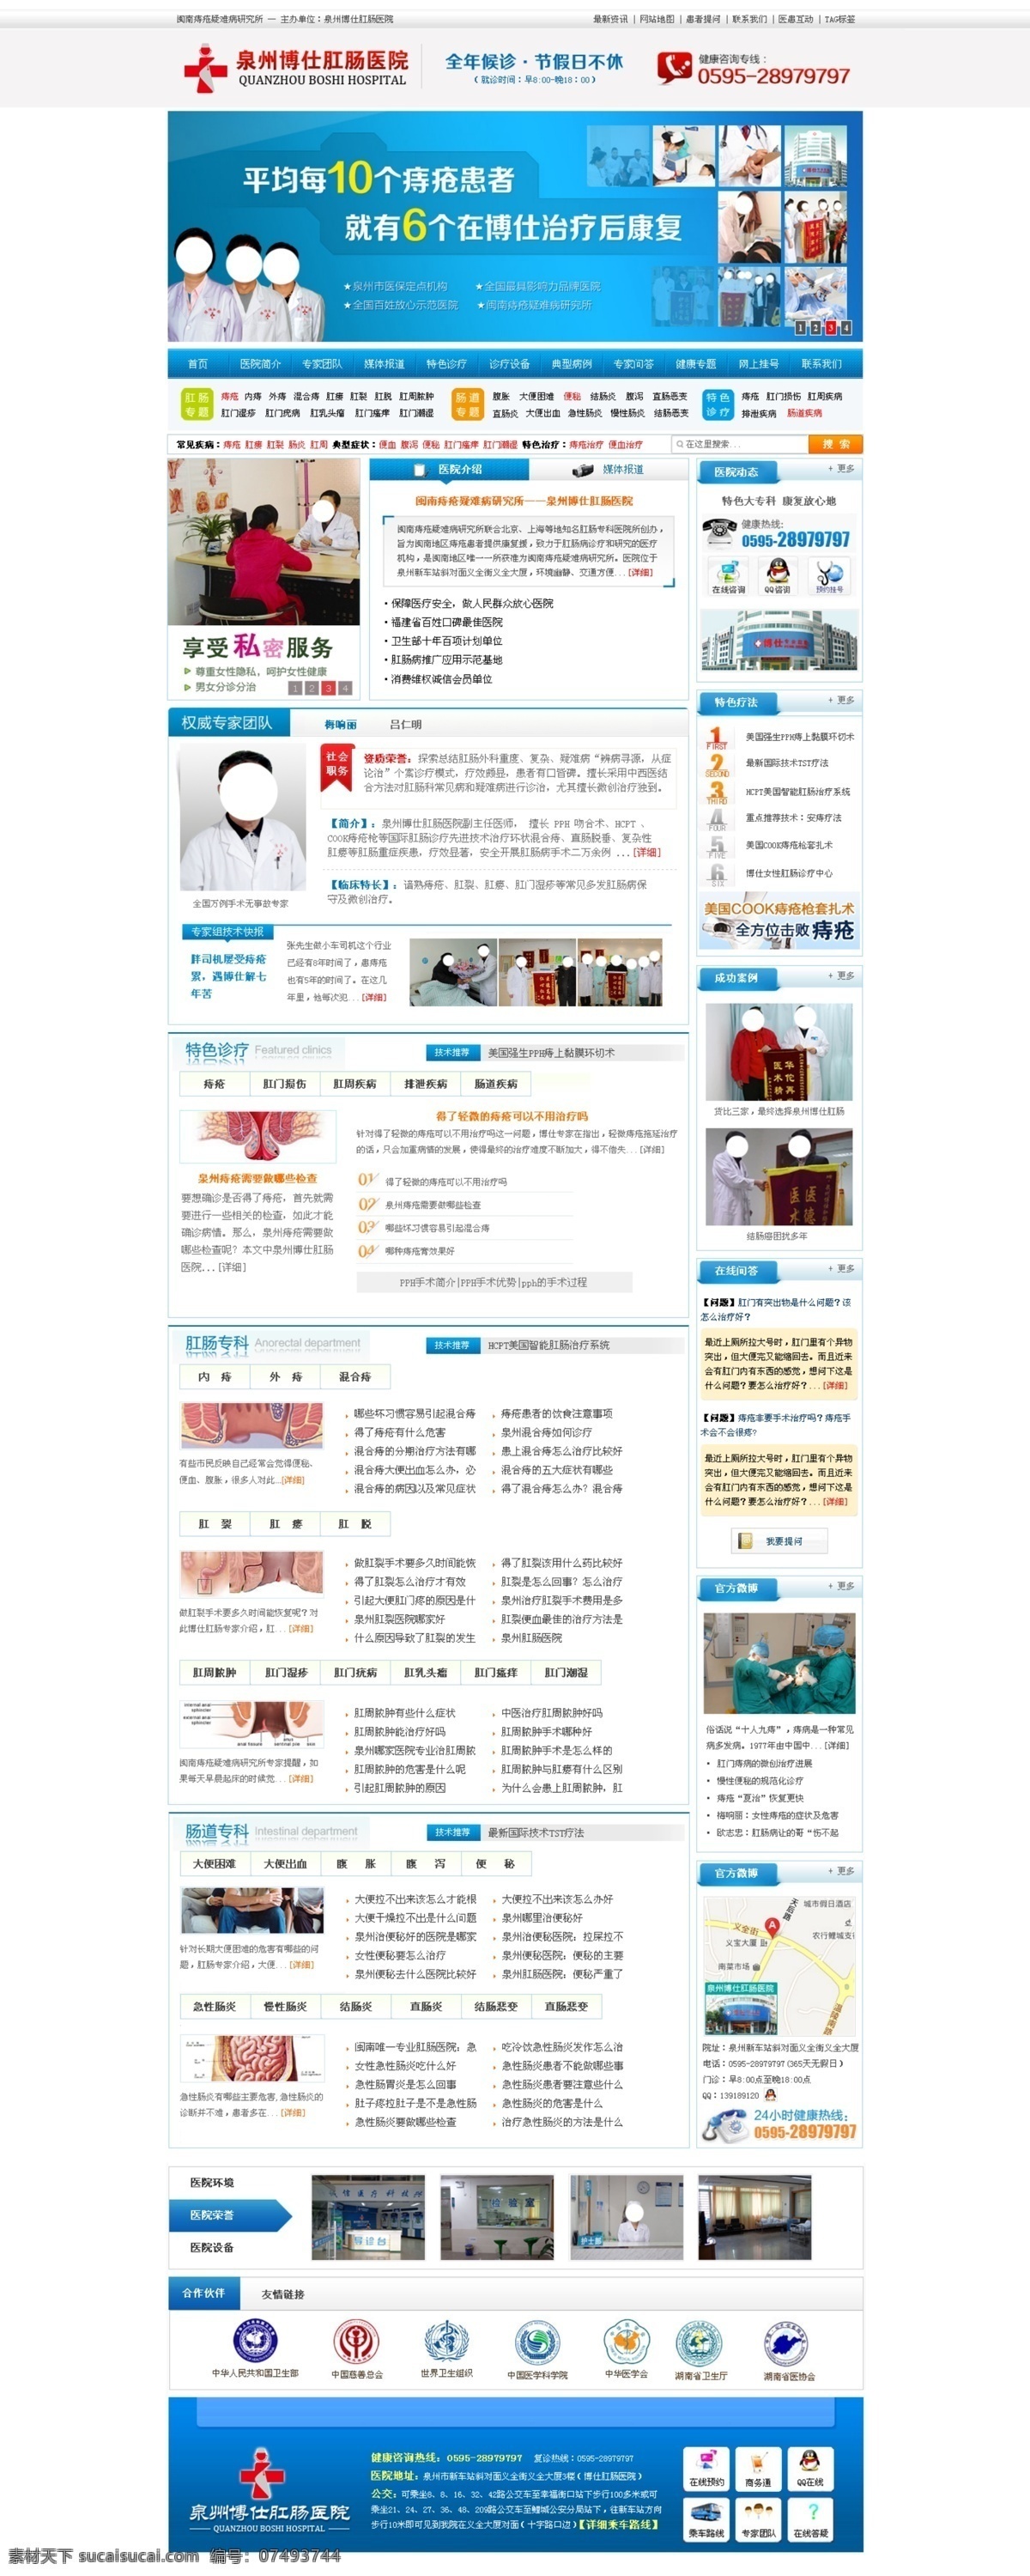 网页模板 网站模板 网站首页模板 医疗网站 医疗网站模板 源文件 中文模板 医疗 网站首页 模板 模板下载 网页素材